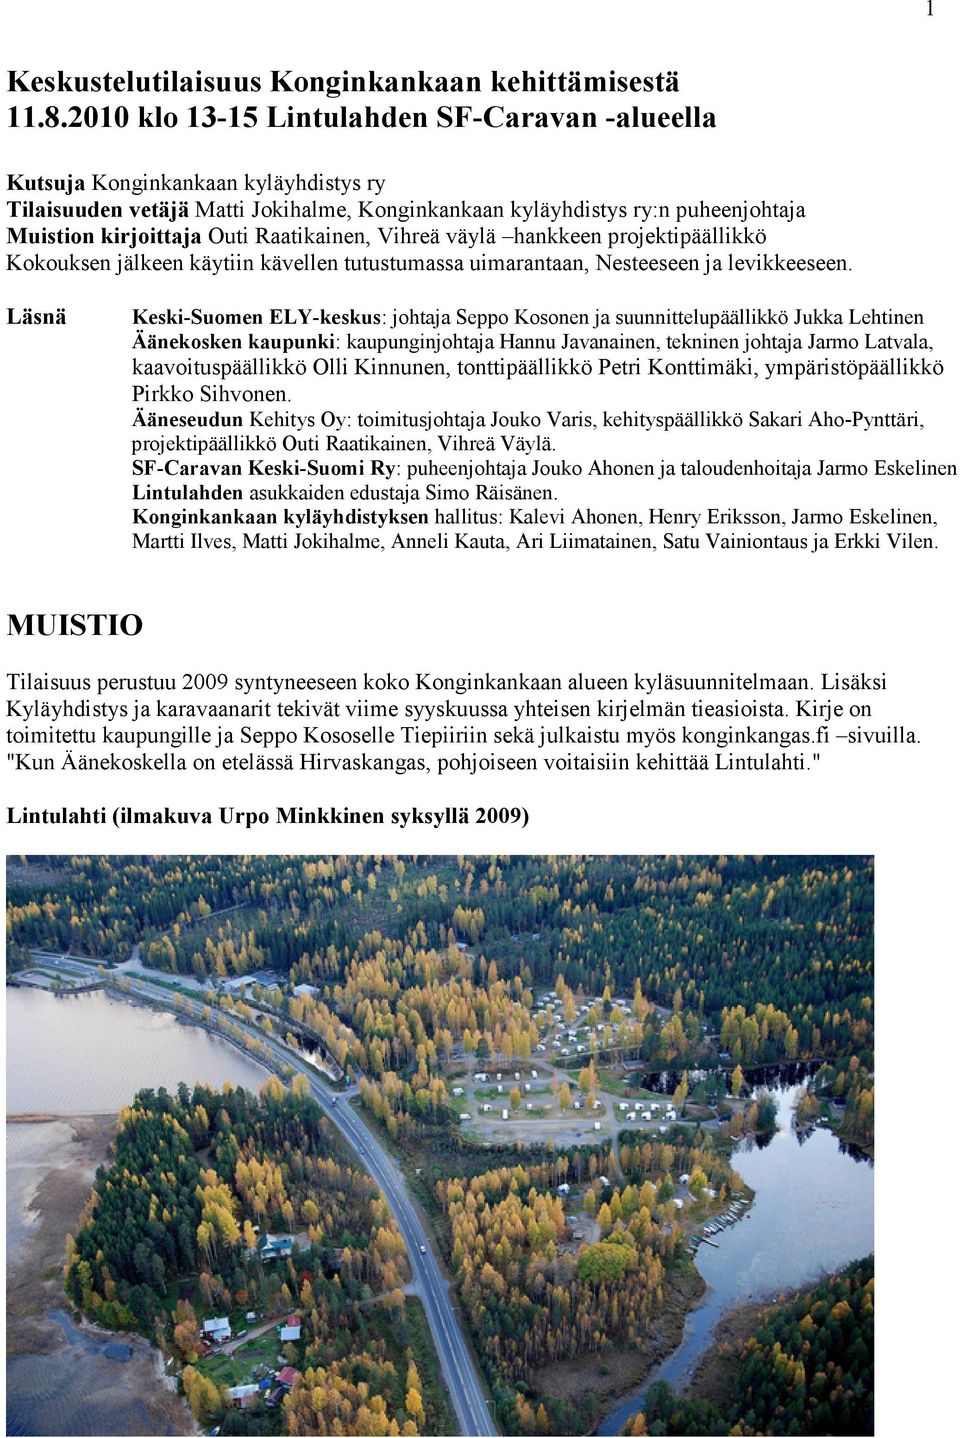 Raatikainen, Vihreä väylä hankkeen projektipäällikkö Kokouksen jälkeen käytiin kävellen tutustumassa uimarantaan, Nesteeseen ja levikkeeseen.